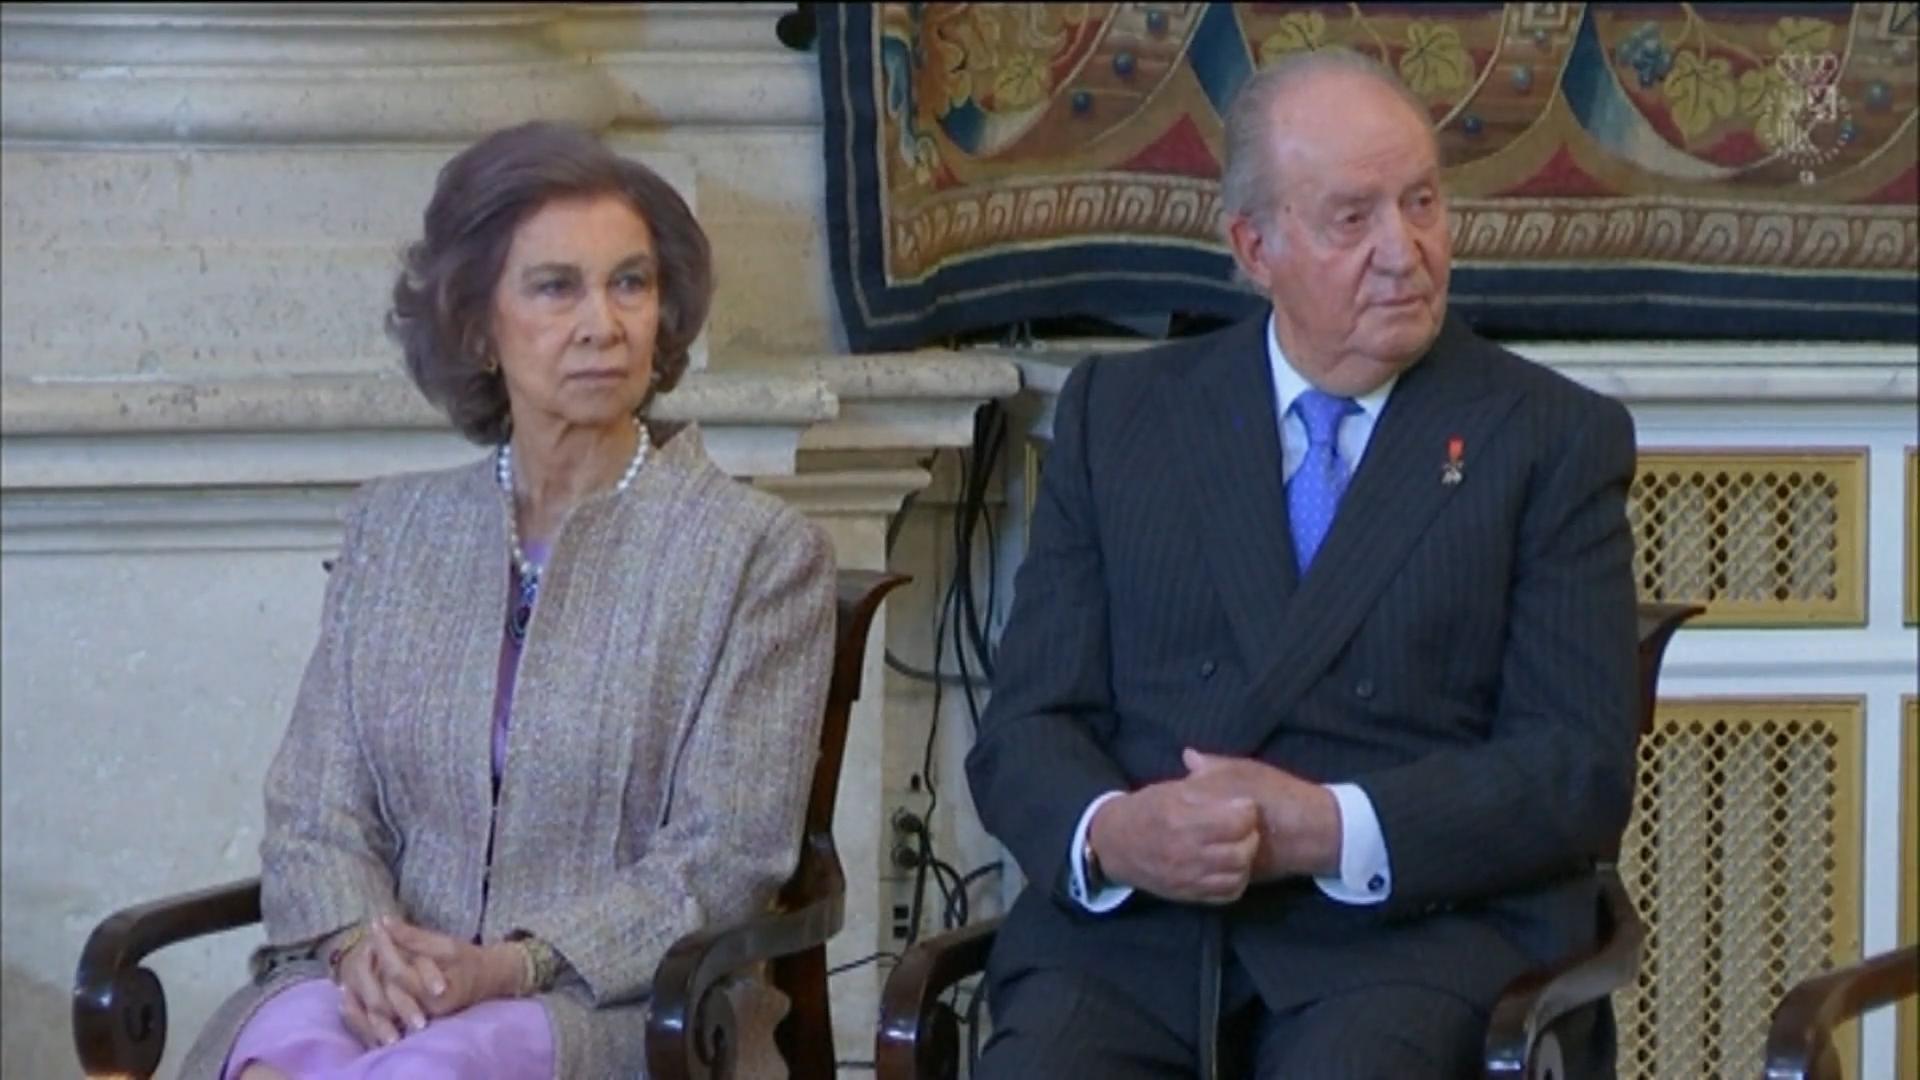 Sexsucht beim Ex-König Juan Carlos? Sucht-Wirbel um Spanien-Royal